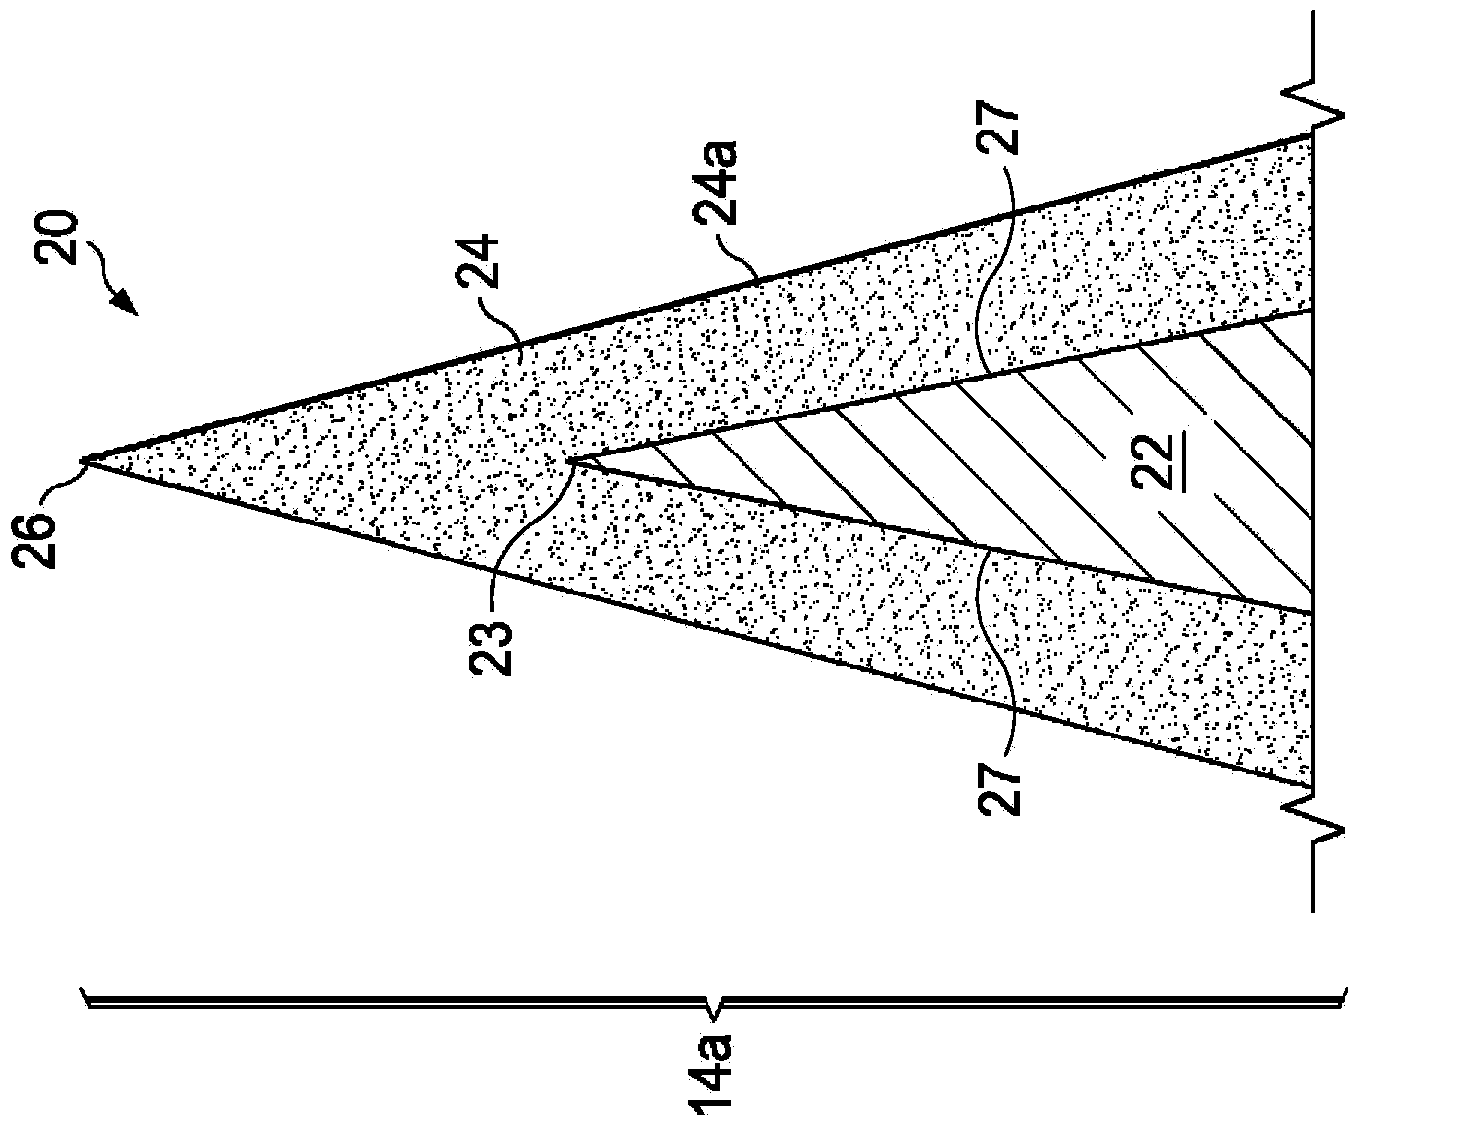 Razor blades with aluminum magnesium boride (AlMgB14)-based coatings